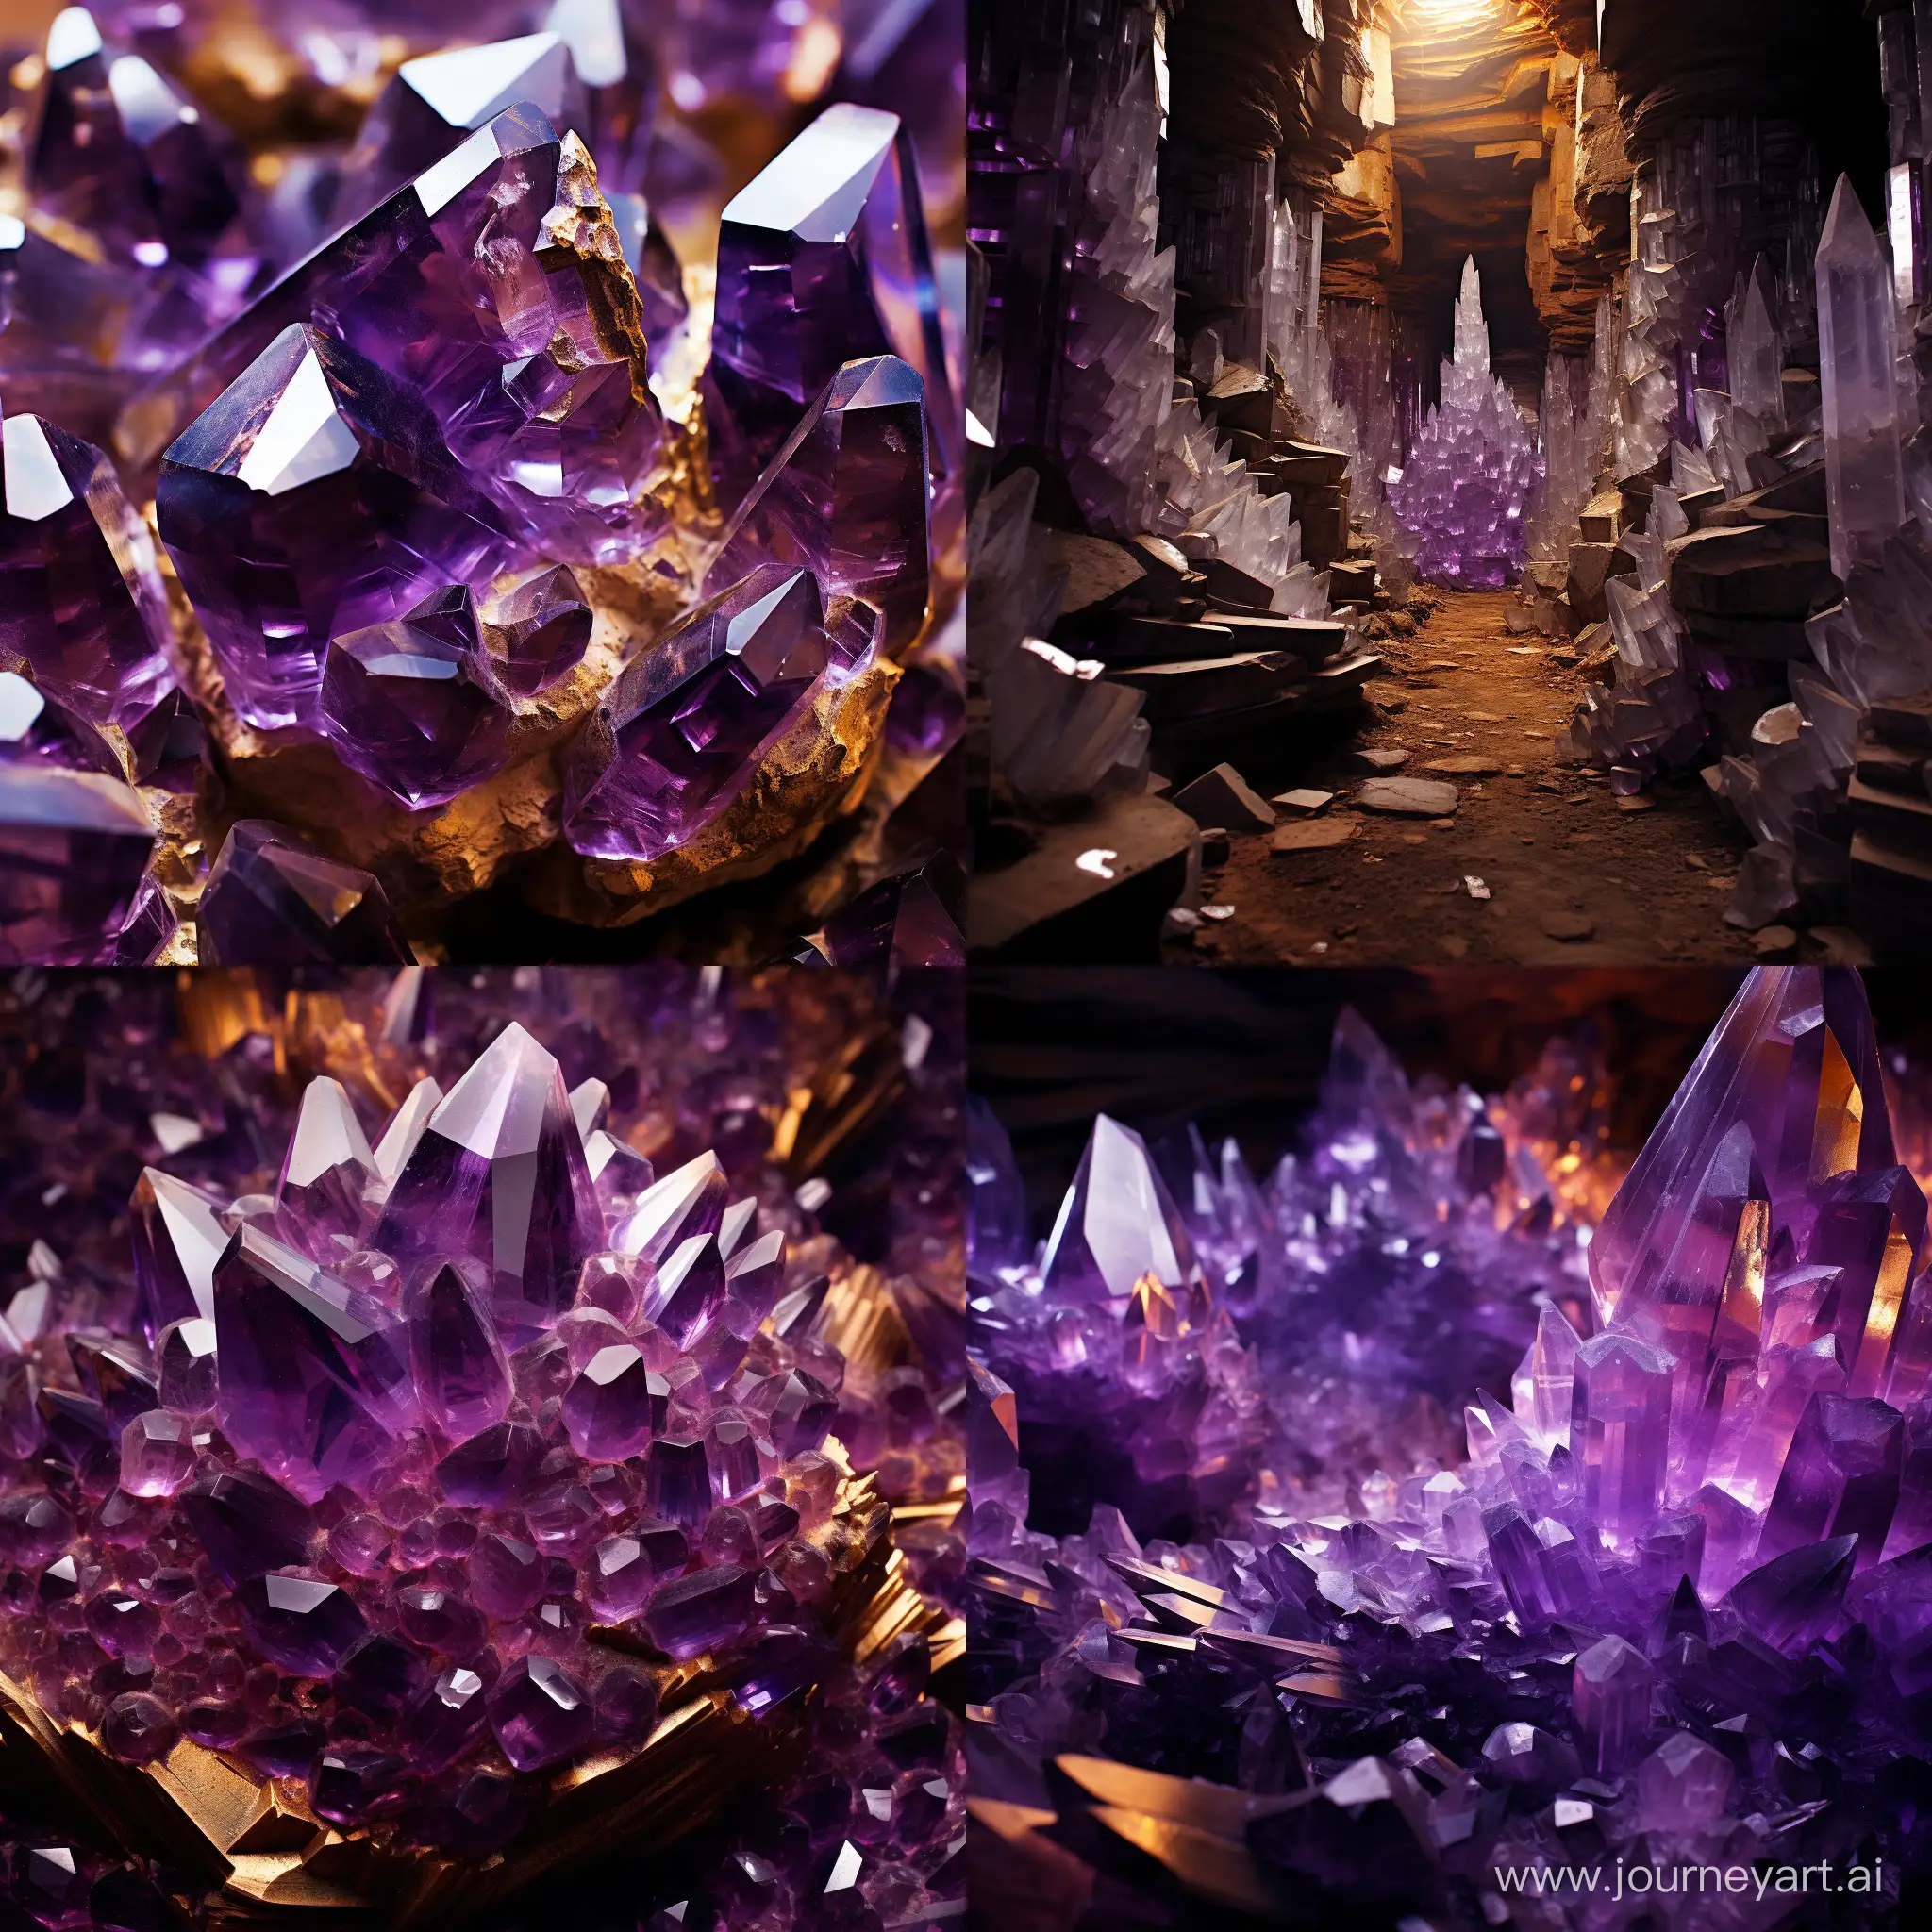 огромное хранилище золота... Фиолетовые кристаллы - накопители огромной энергии